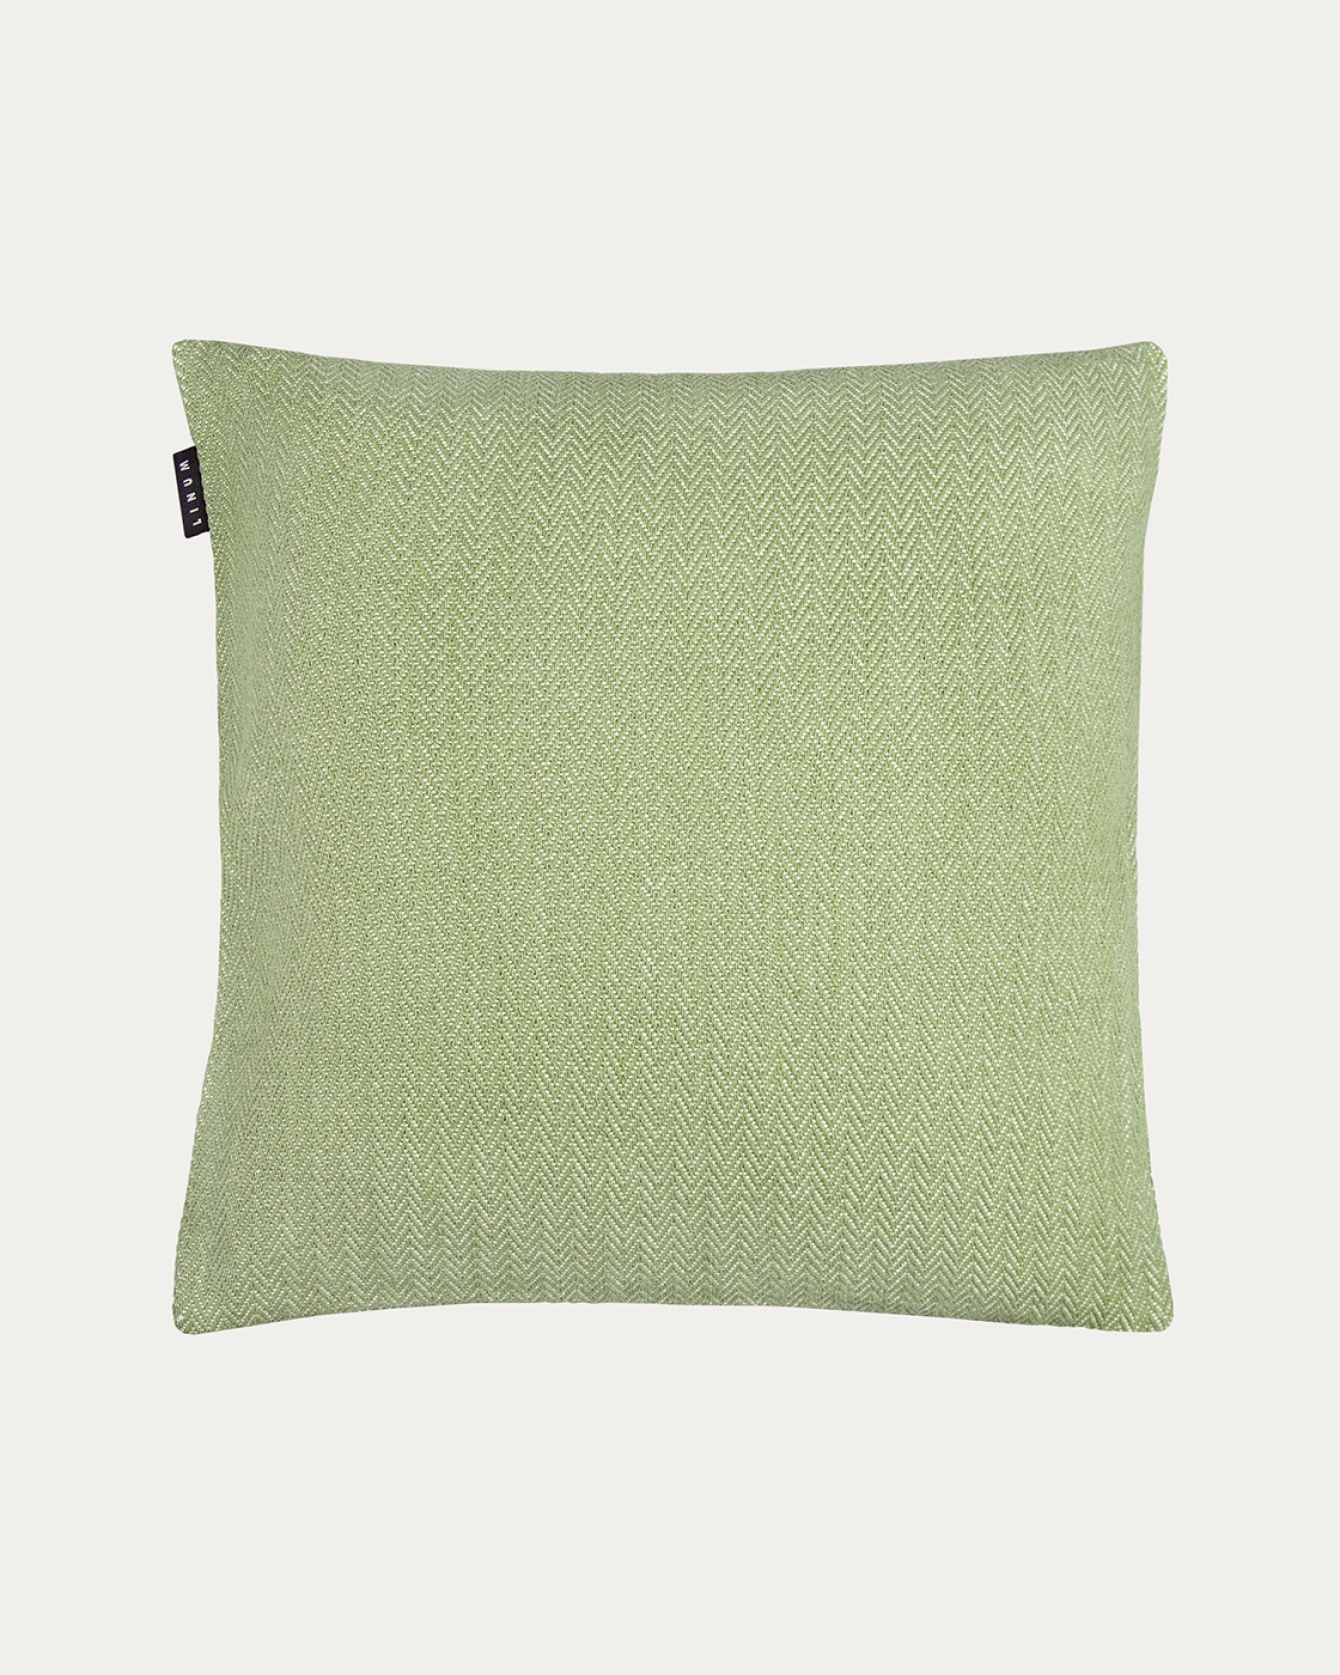 Image du produit housse de coussin SHEPARD vert mousse en coton doux avec un motif à chevrons discret de LINUM DESIGN. Taille 50 x 50 cm.